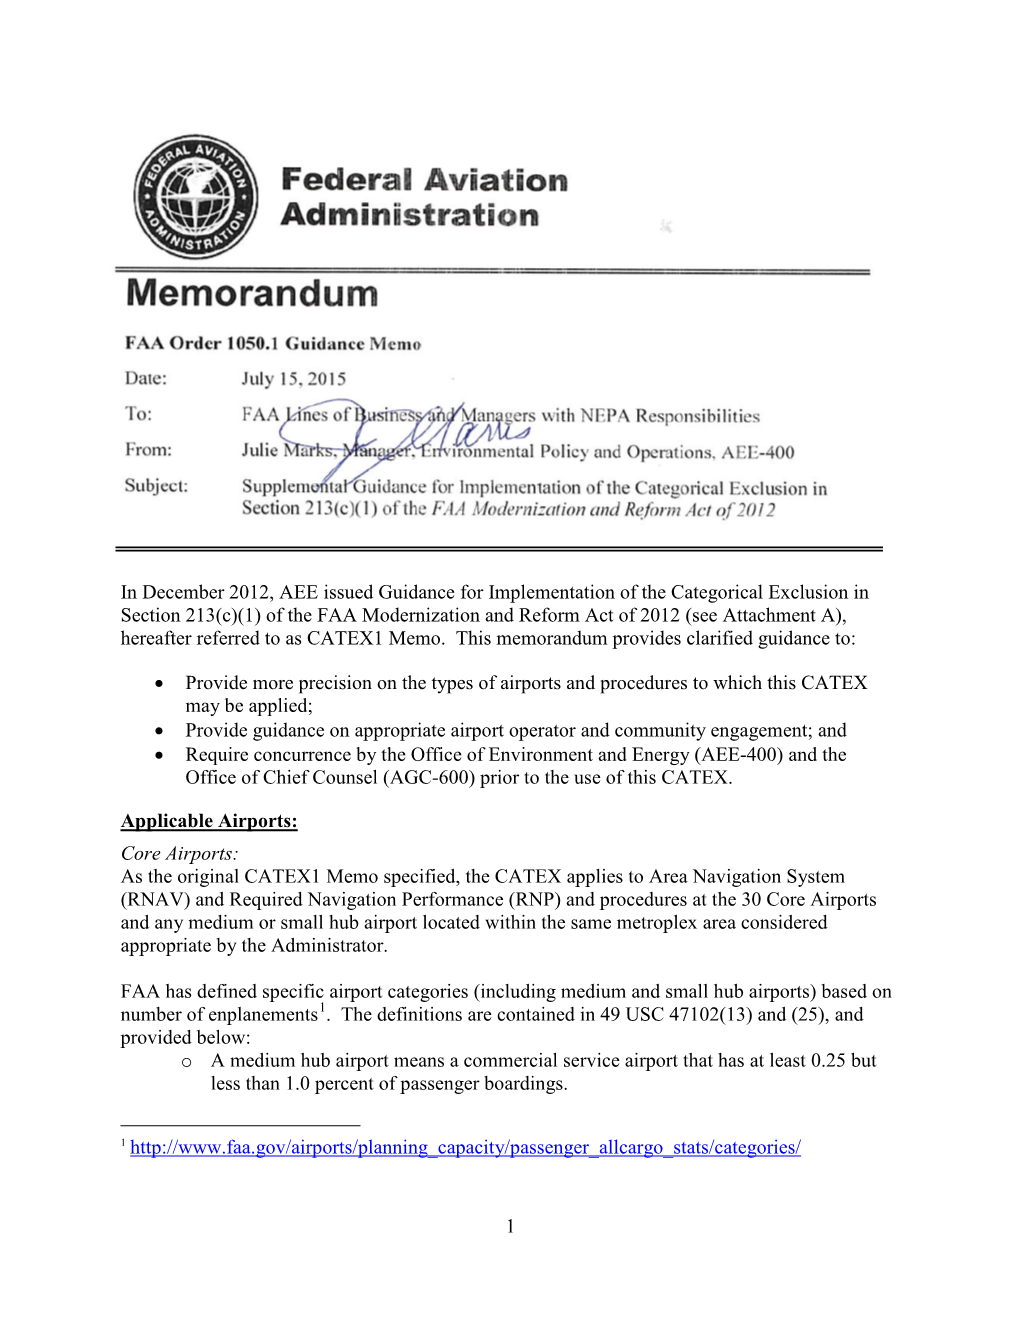 Memorandum FAA Order 1050.1 Guidance Memo